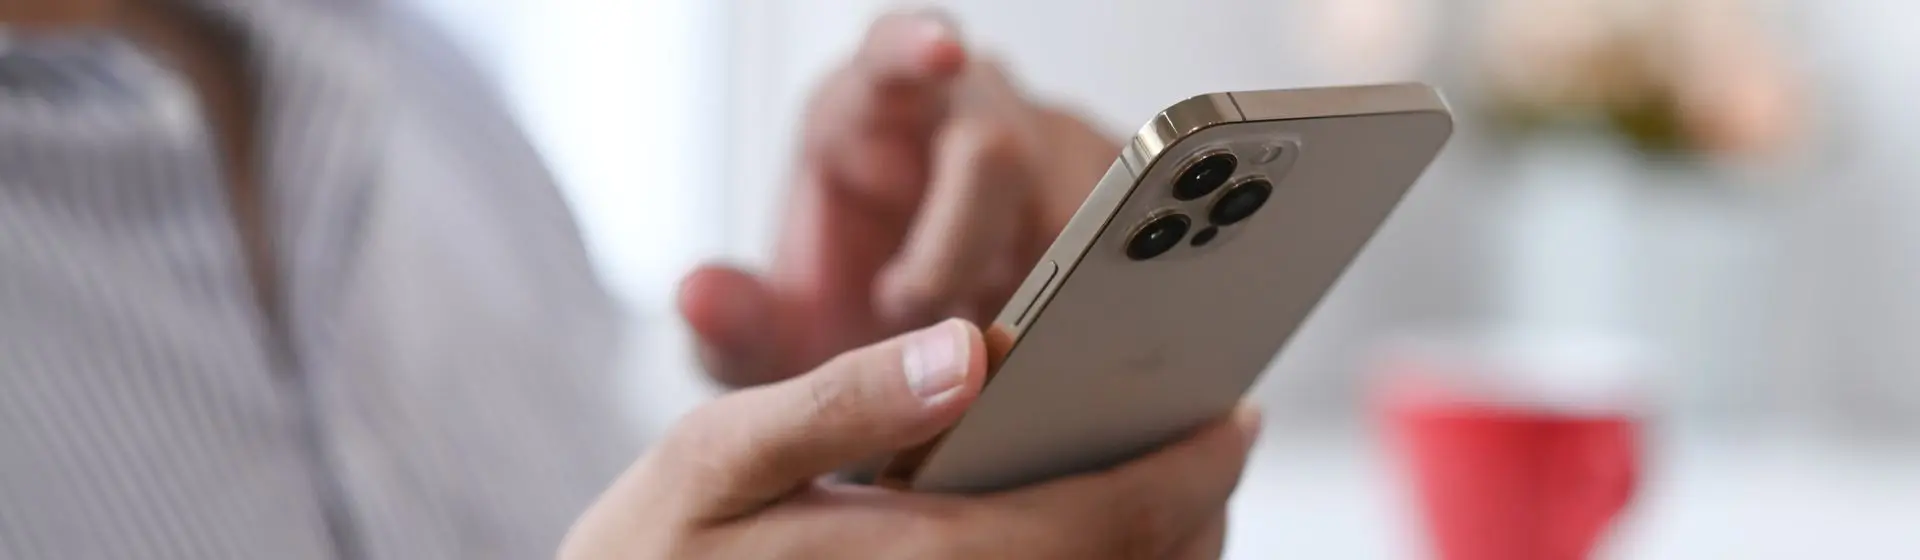 Mão segurando um iPhone 12 Pro, um celular tela grande